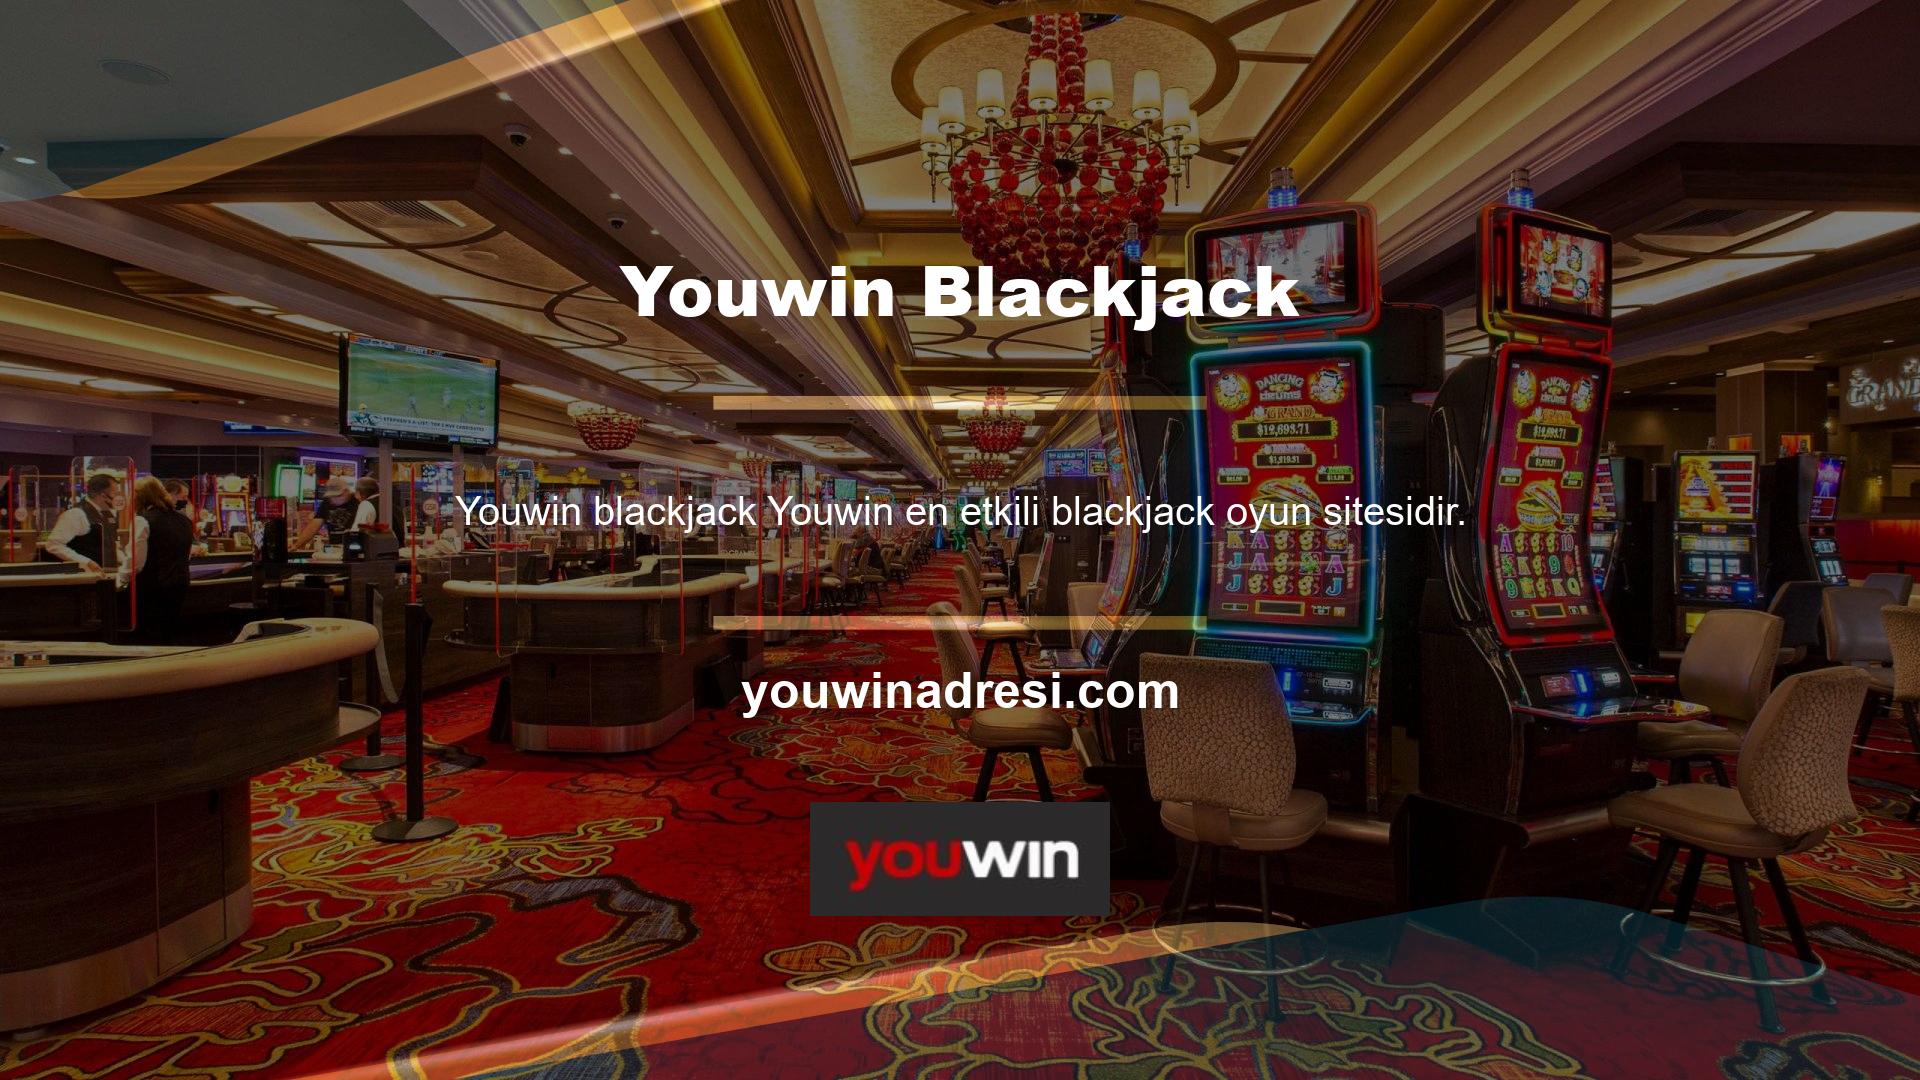 Youwin en etkili blackjack oyun sitelerinden biridir ve halen ülkemiz casino pazarında lider konumunu sürdürmektedir